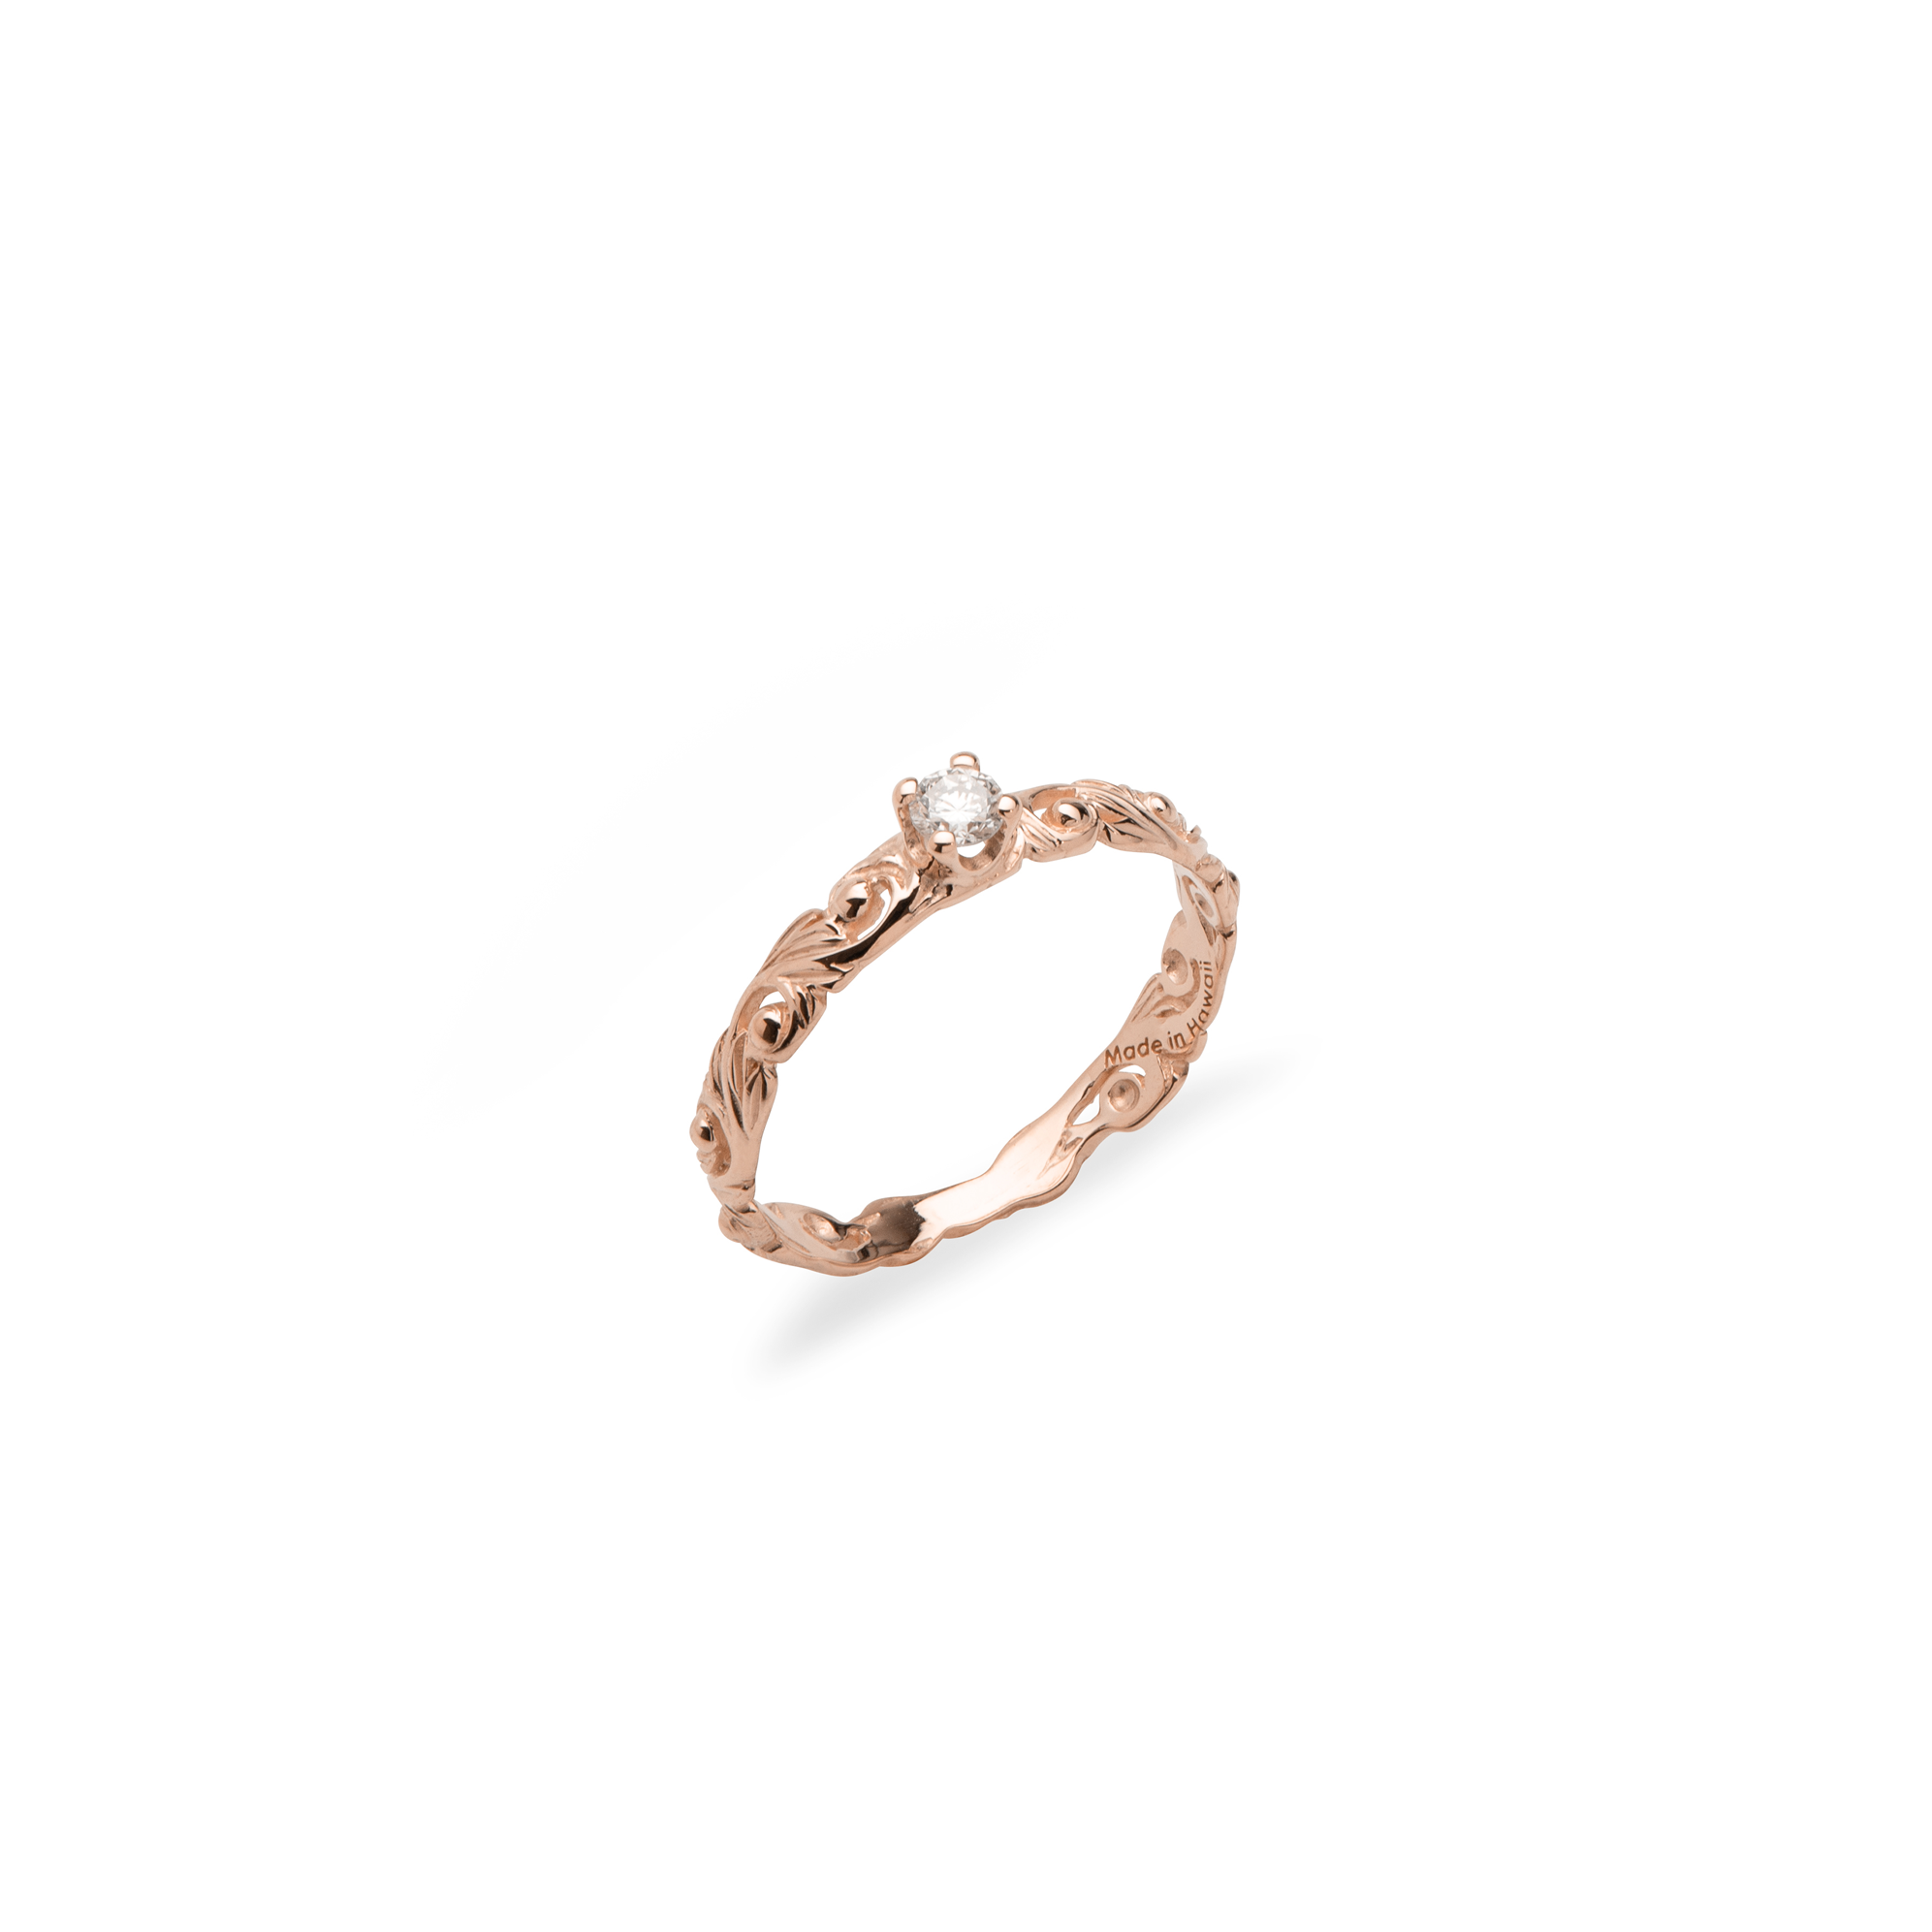 Living Heirloom-Ring in Roségold mit Diamanten – 3 mm